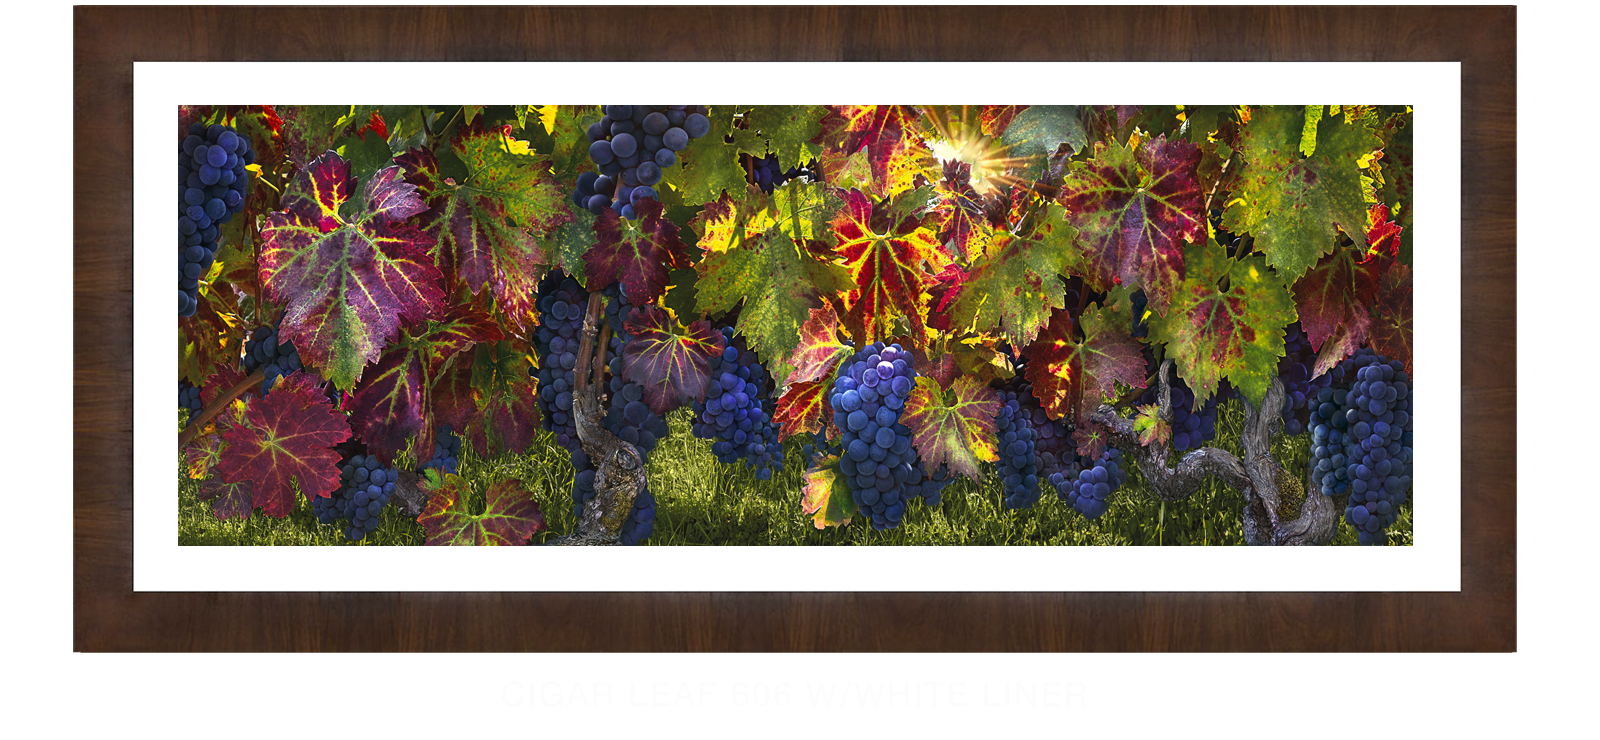 21CATHEDRALI VITIS Cigar Leaf 606 w_Wht Liner T